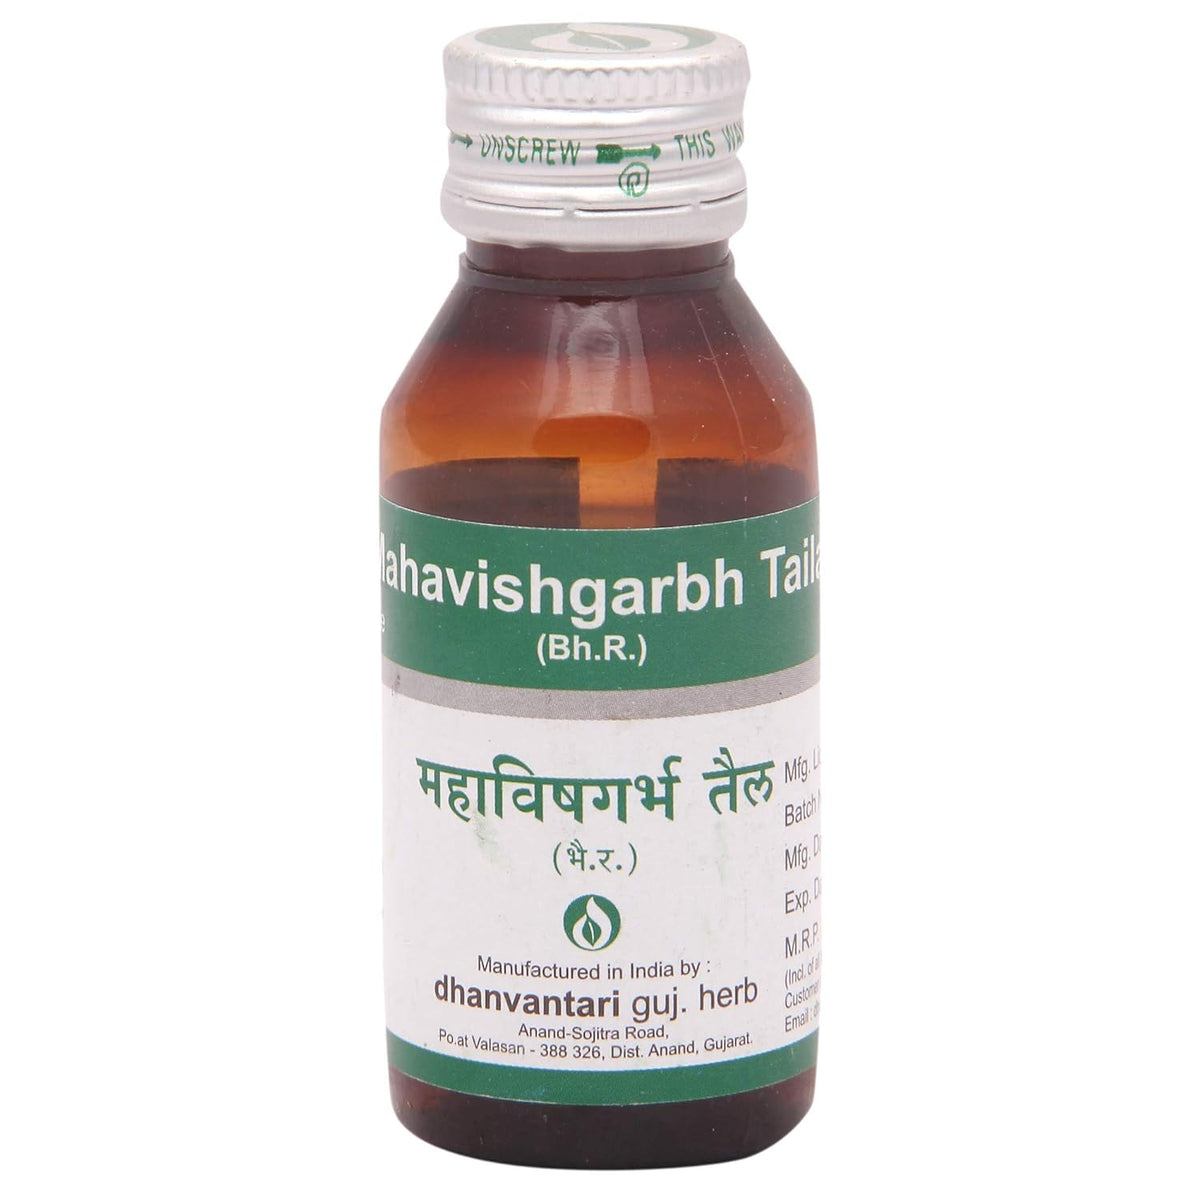 Dhanvantari Ayurvedic Mahavishgarbh Taila Nützlich bei rheumatischen Störungen Öl